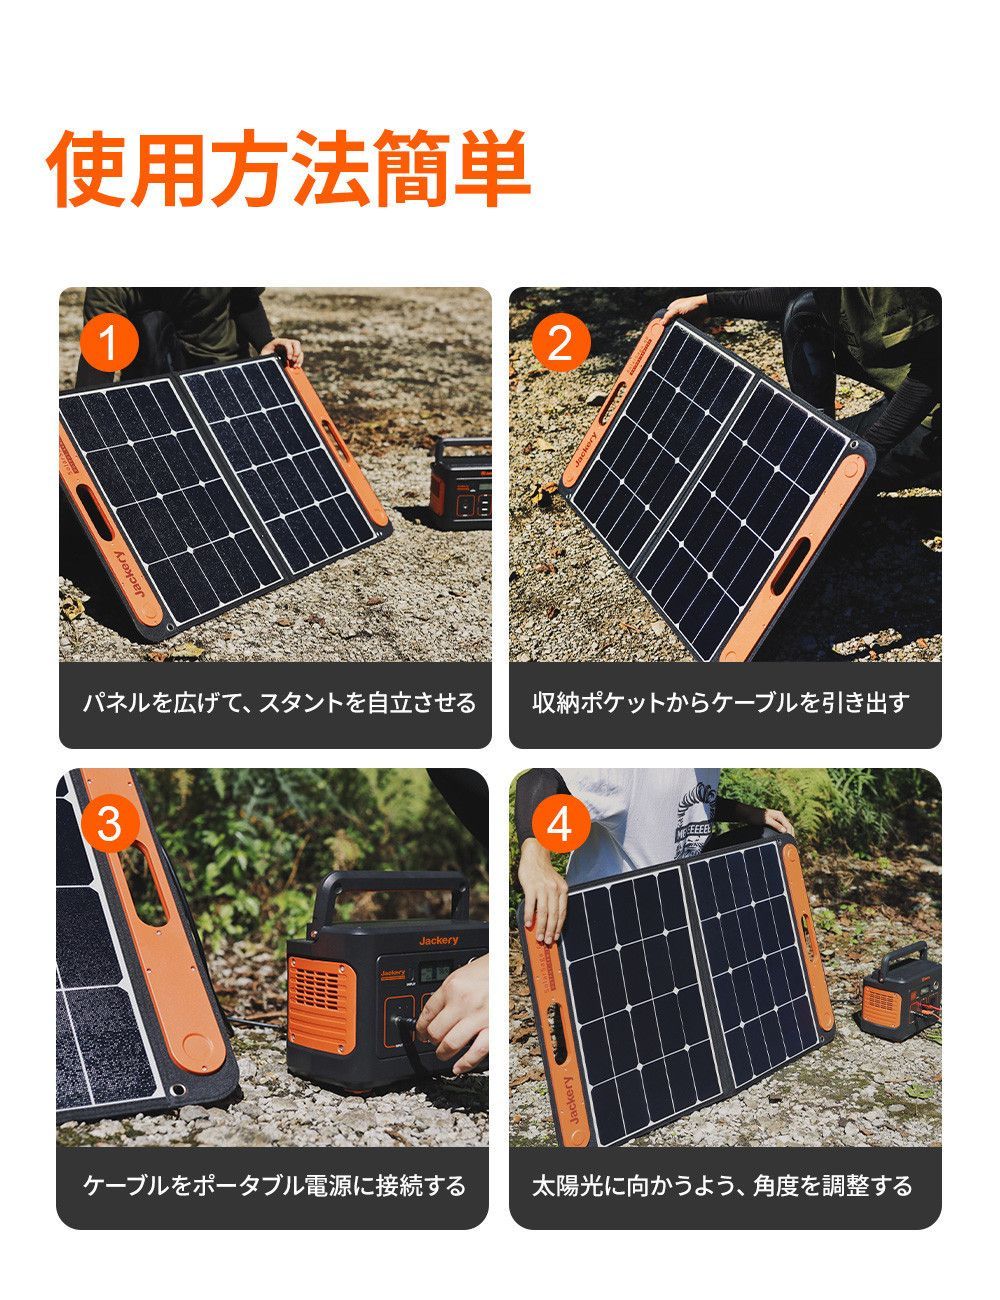 【連休特別価格】Jackery SolarSaga 60PROソーラーパネル